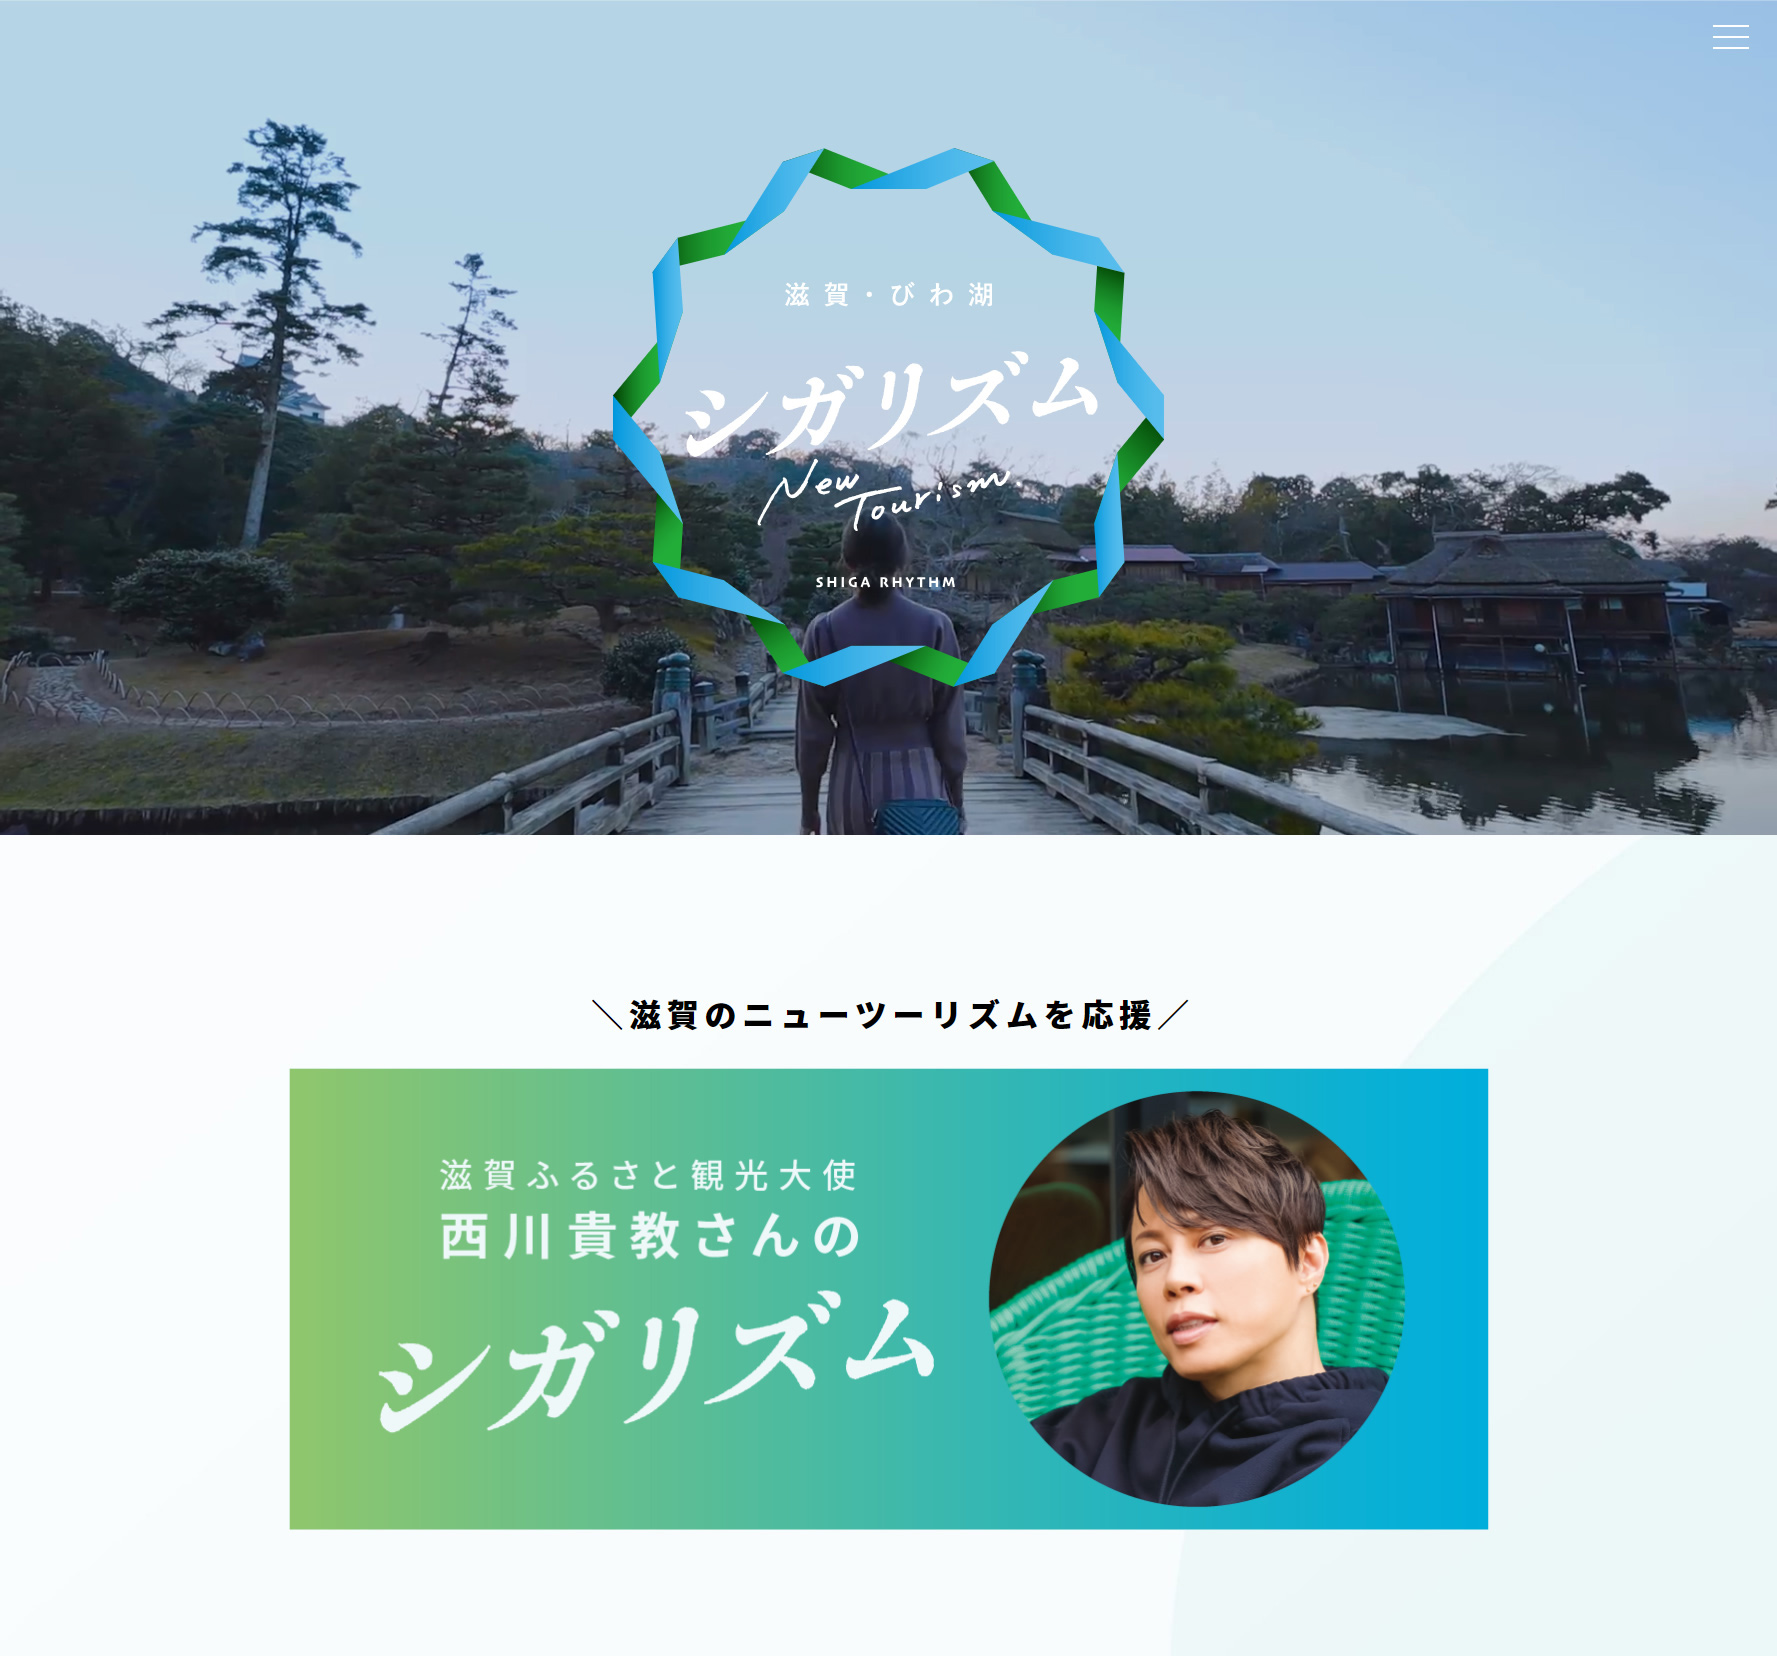 滋賀県公式総合観光パンフレット シガリズム 発行のお知らせ 公益社団法人びわこビジターズビューローのプレスリリース